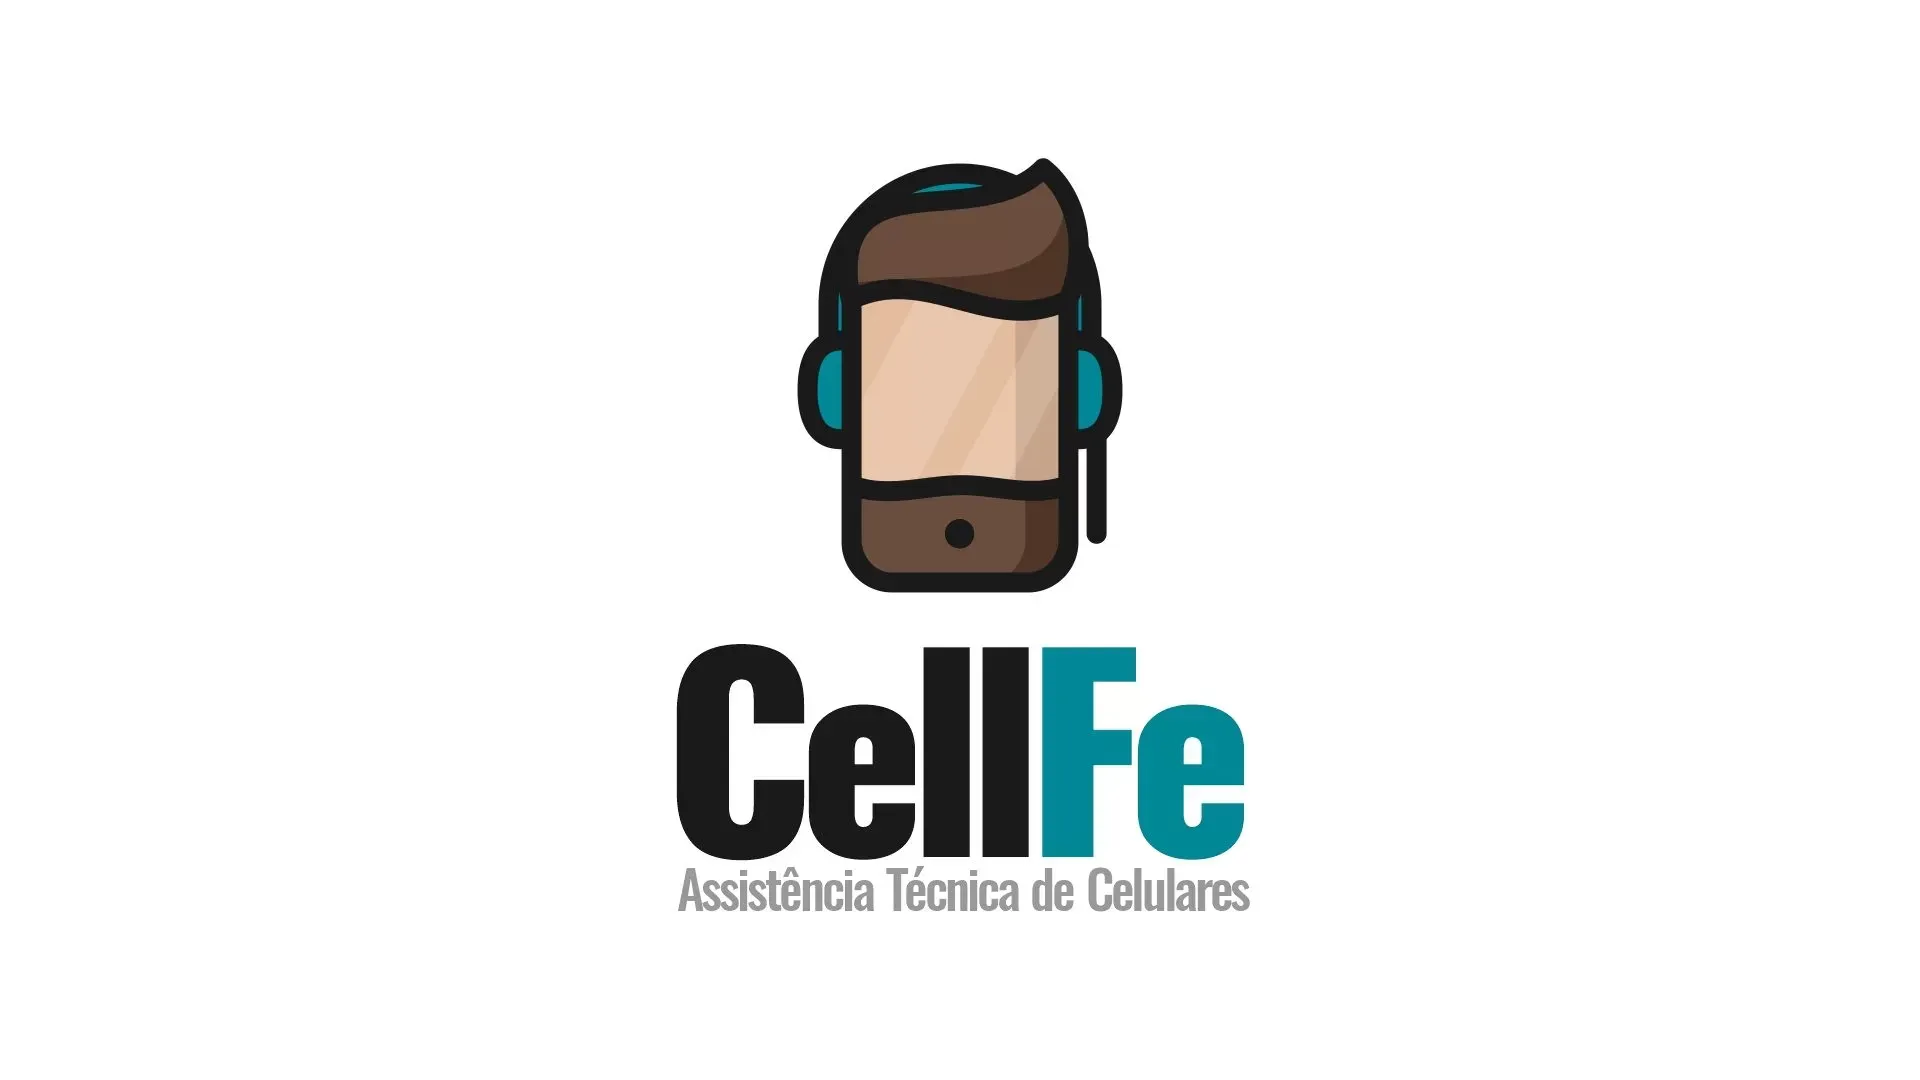 cellfe-logo5.jpg_otimizada